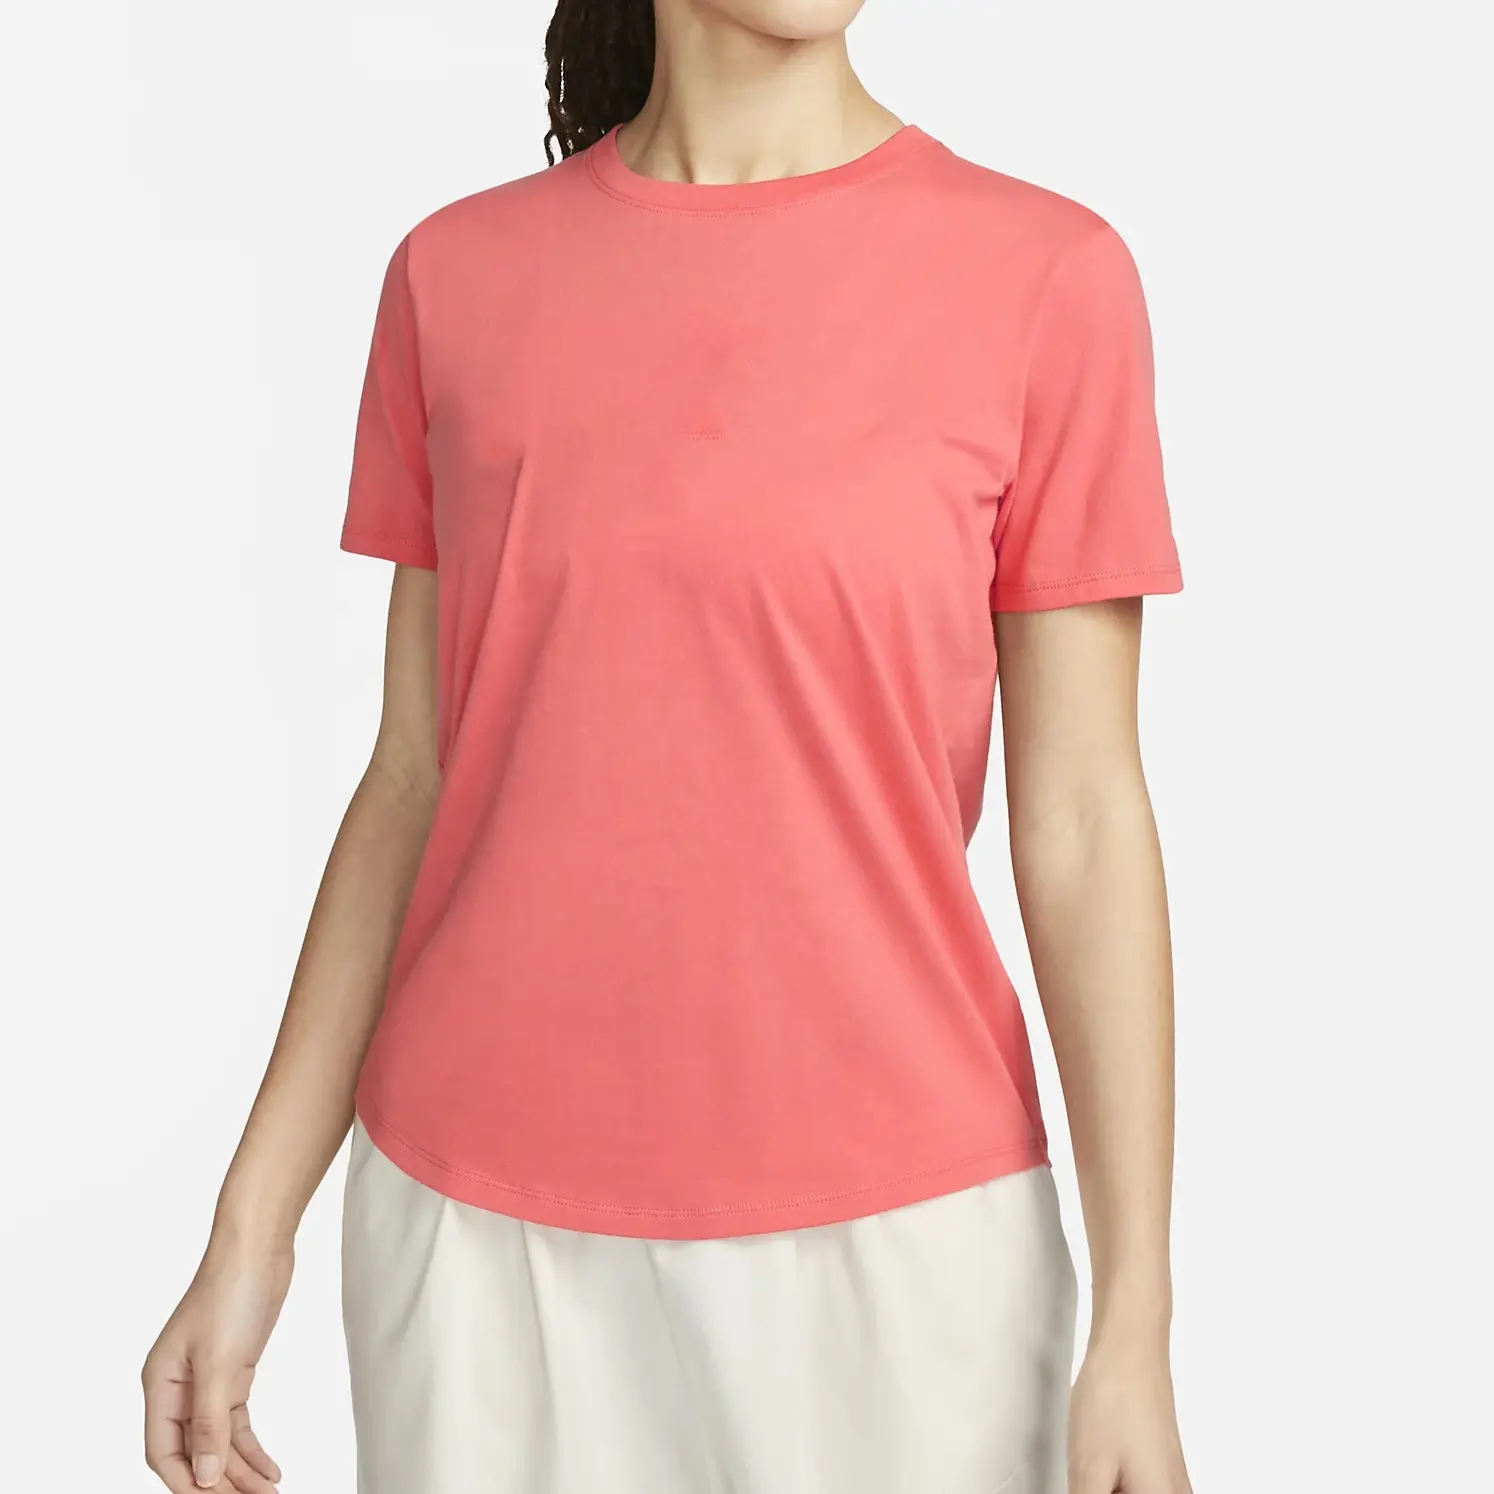 Kaus wanita katun Super lembut Logo cetak layar kustom pabrik langsung pakaian aktif antilembap